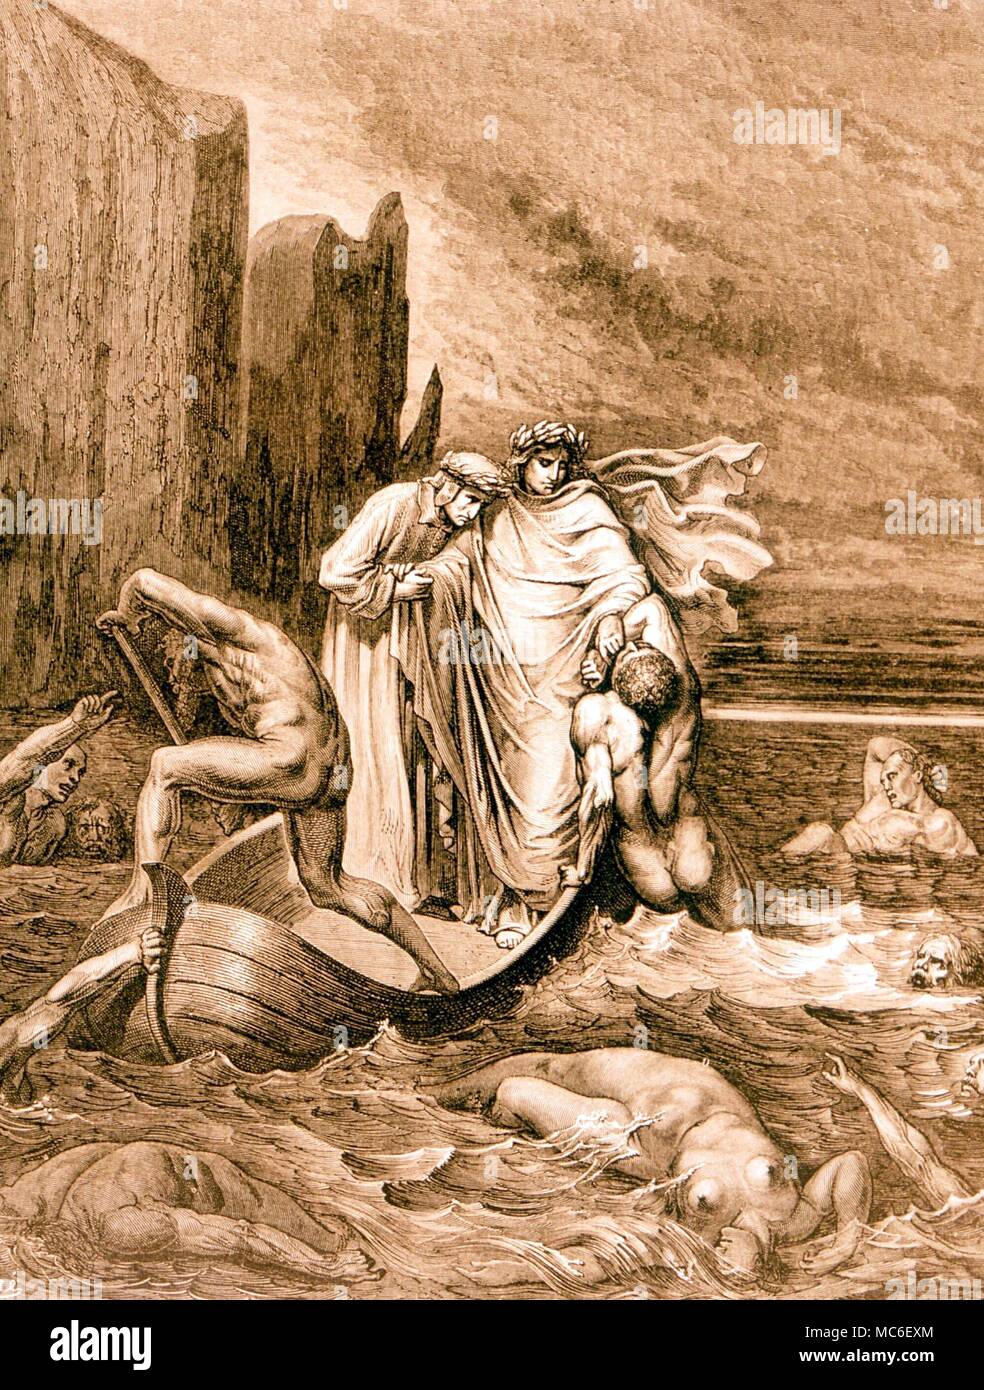 Hölle - Dantes Charon Abbildung von Gustav Doré zu Canto VIII. von Dante's Inferno. Dante, Vergil und Charon überqueren den Fluss der Hölle Stockfoto